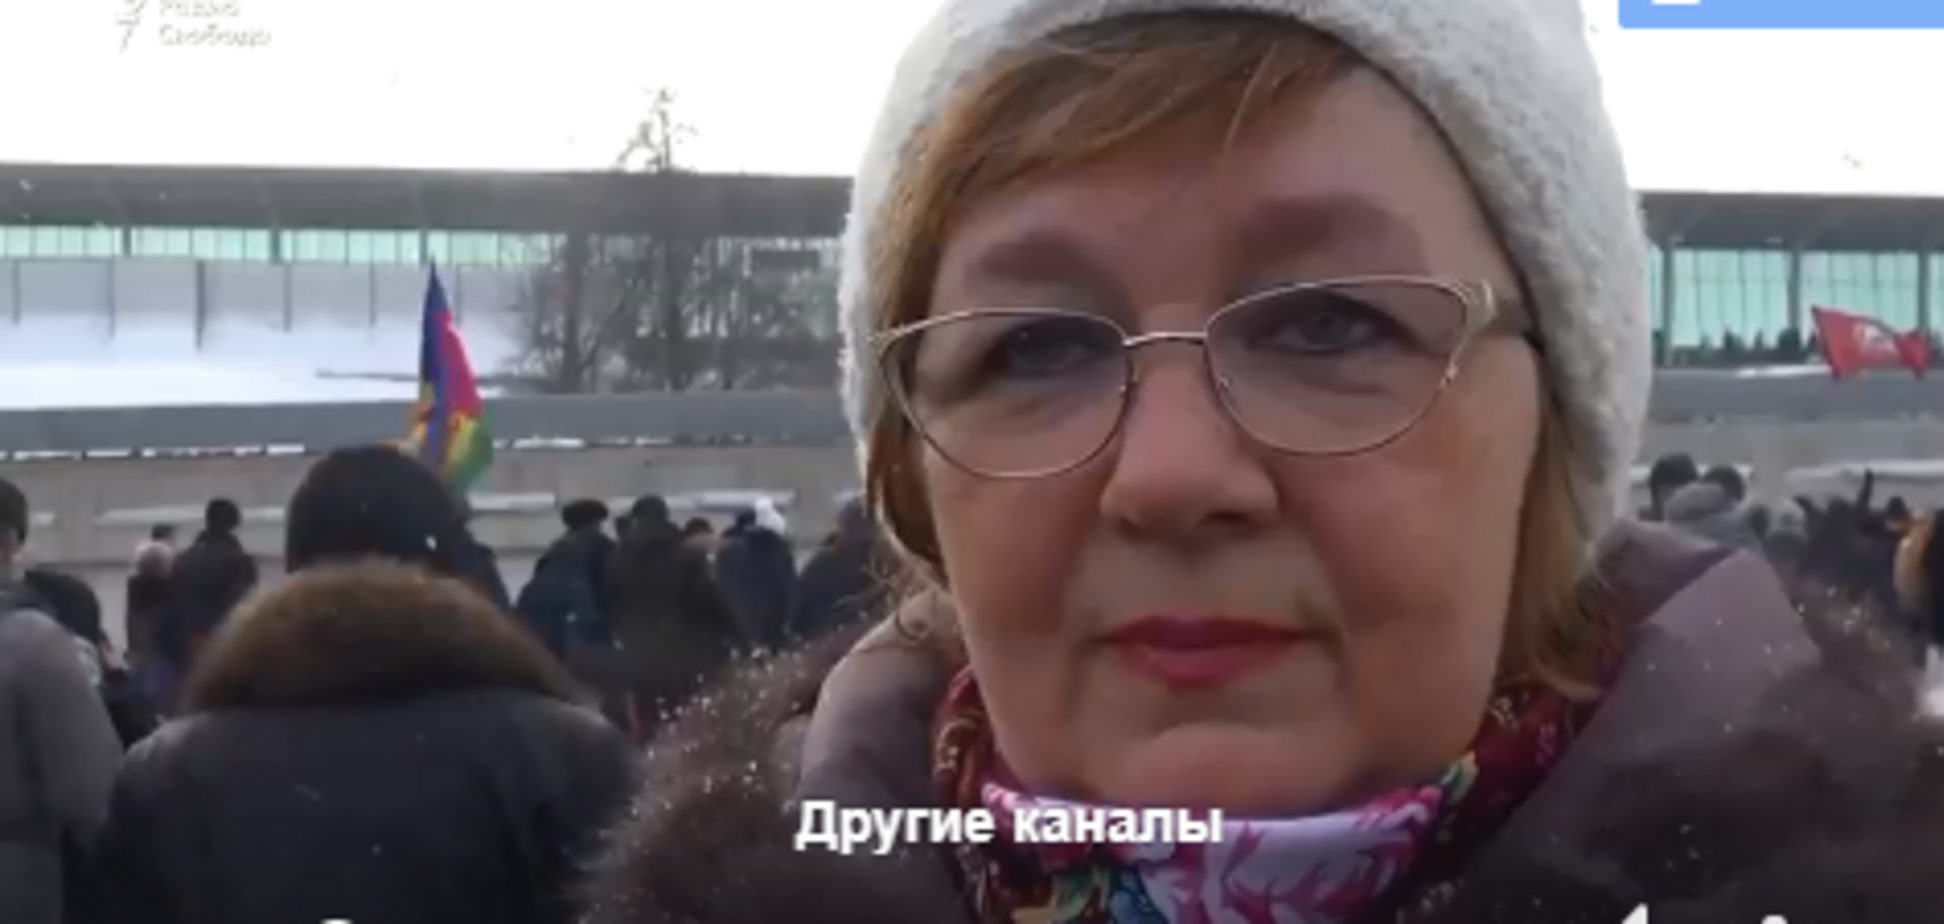 'Где отмечаться?' Вскрылась изнанка митинга Путина в Москве